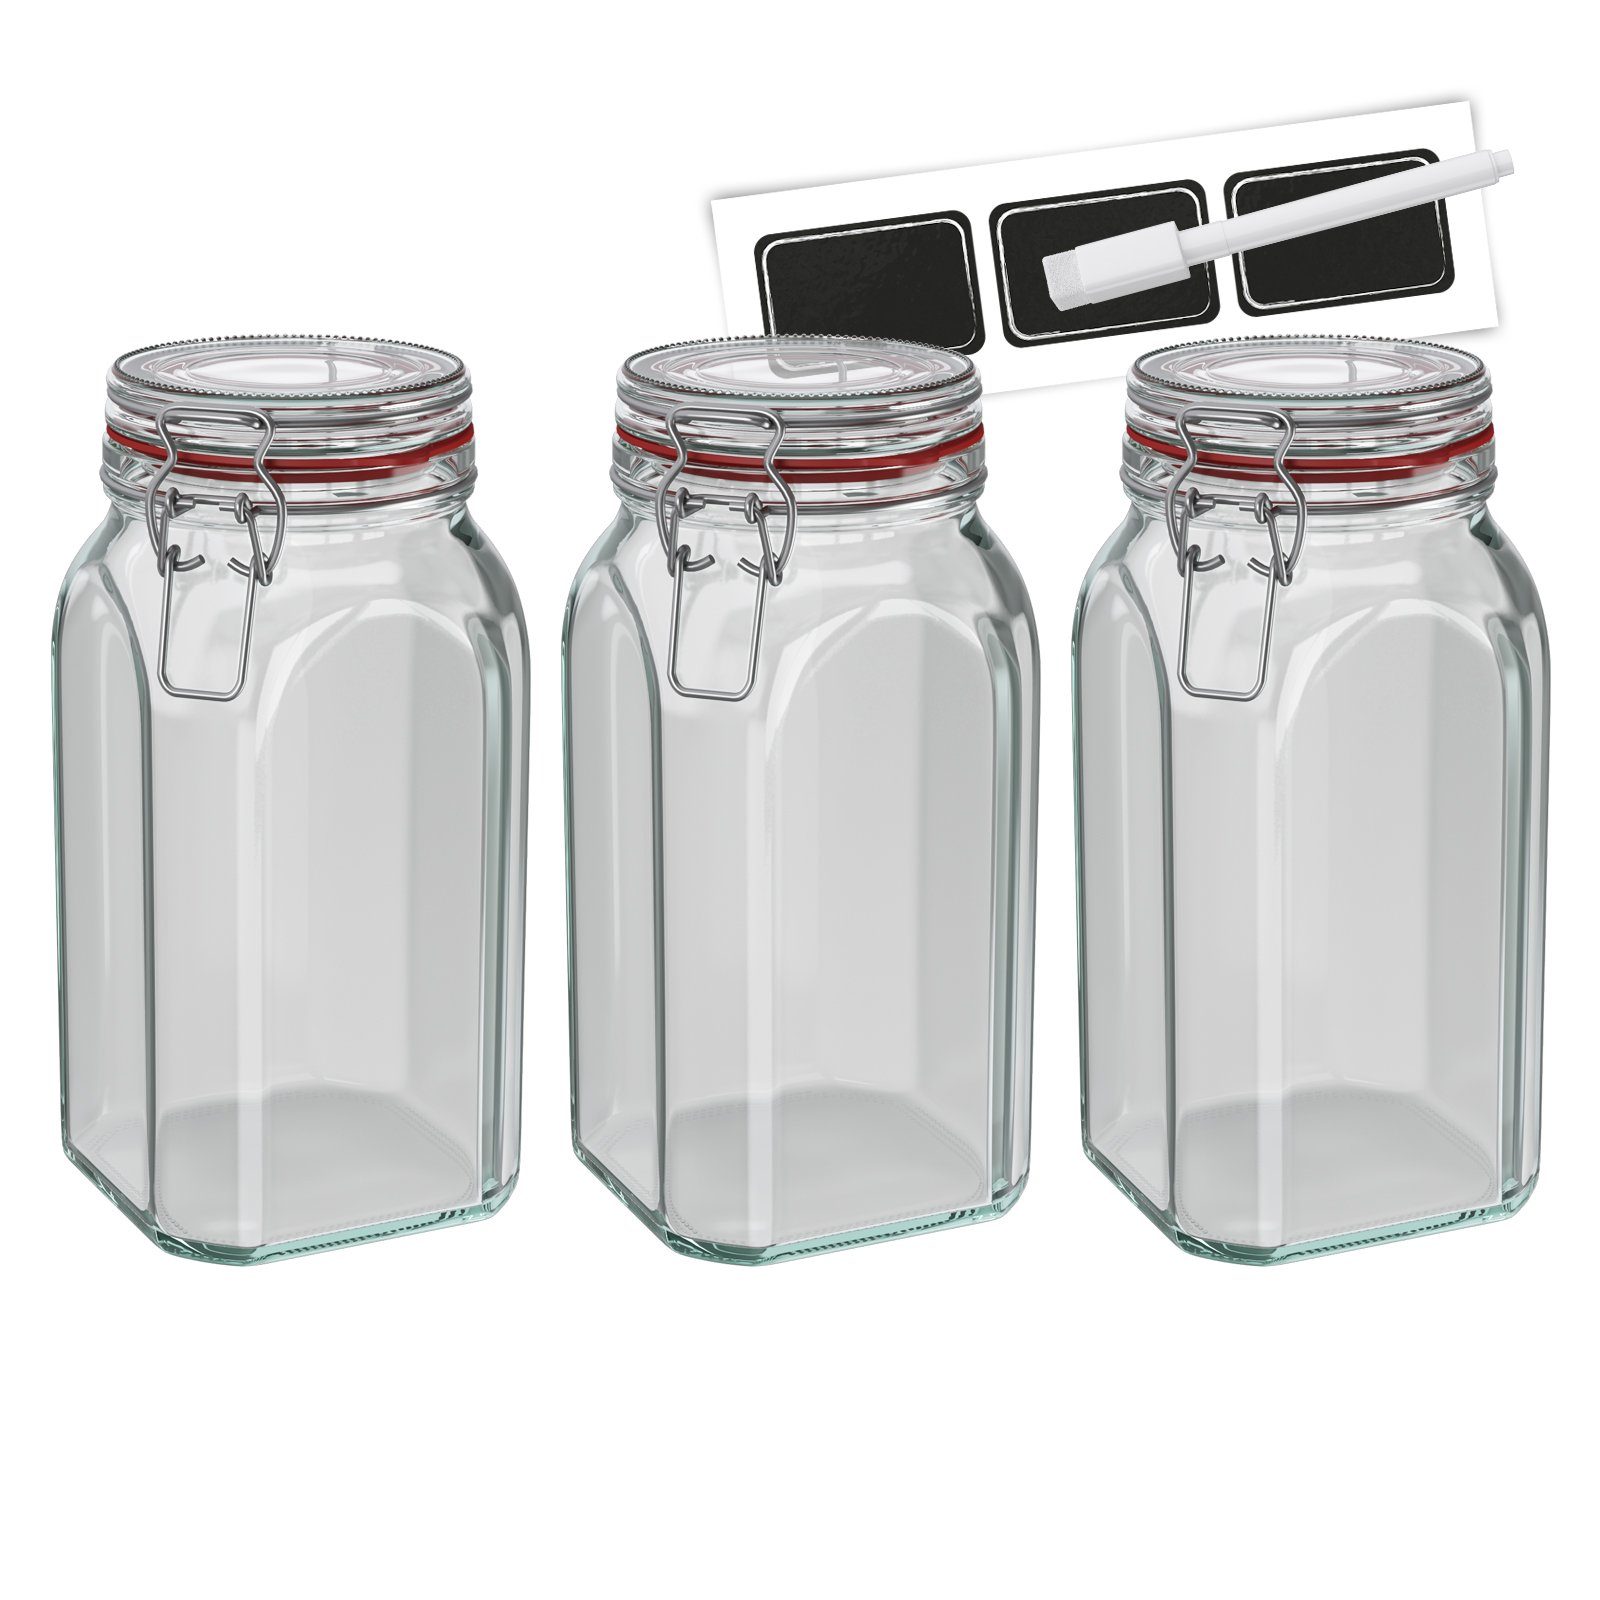 Wellgro Vorratsglas Einmachglas mit Bügelverschluss – 1540 ml Bügelverschlussglas inkl. Etiketten und Kreidestift – Vorratsglas, Drahtbügelglas, Nudelglas – Glas Made in Germany, (3-tlg)